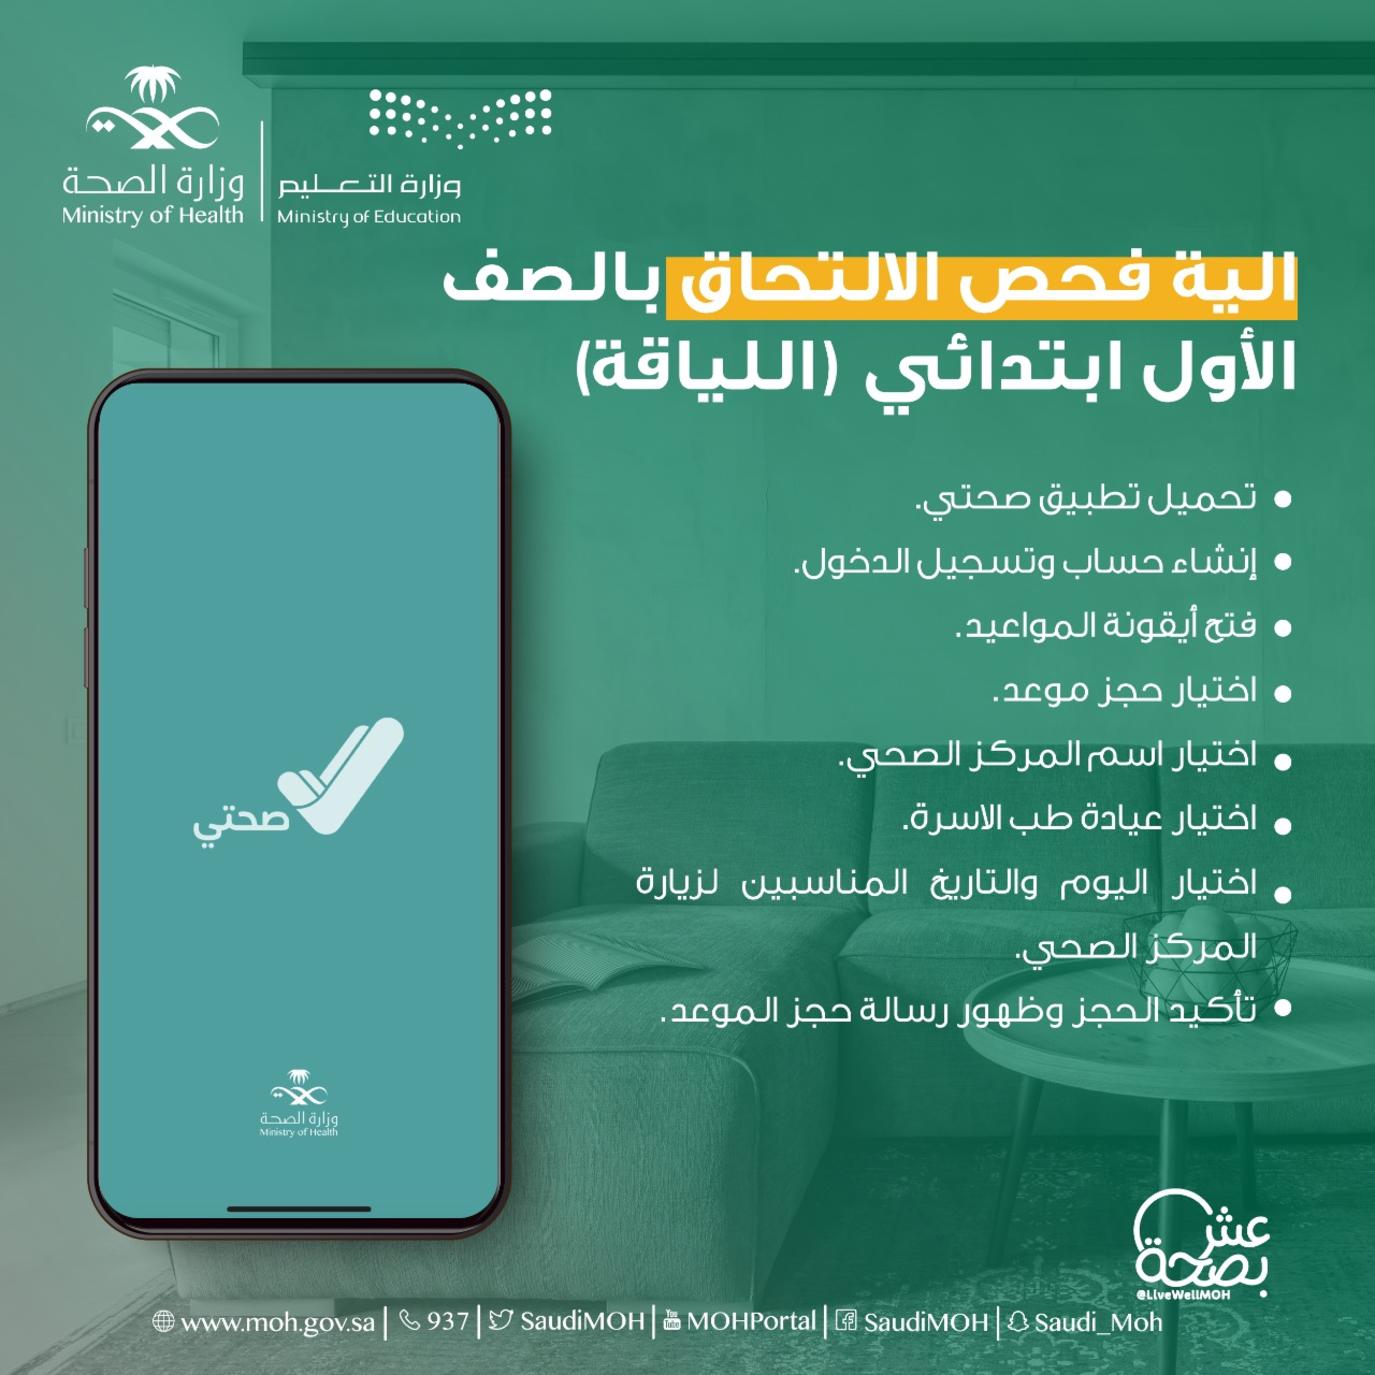 وزارة حجز السعودية موعد الصحة رابط وطريقة